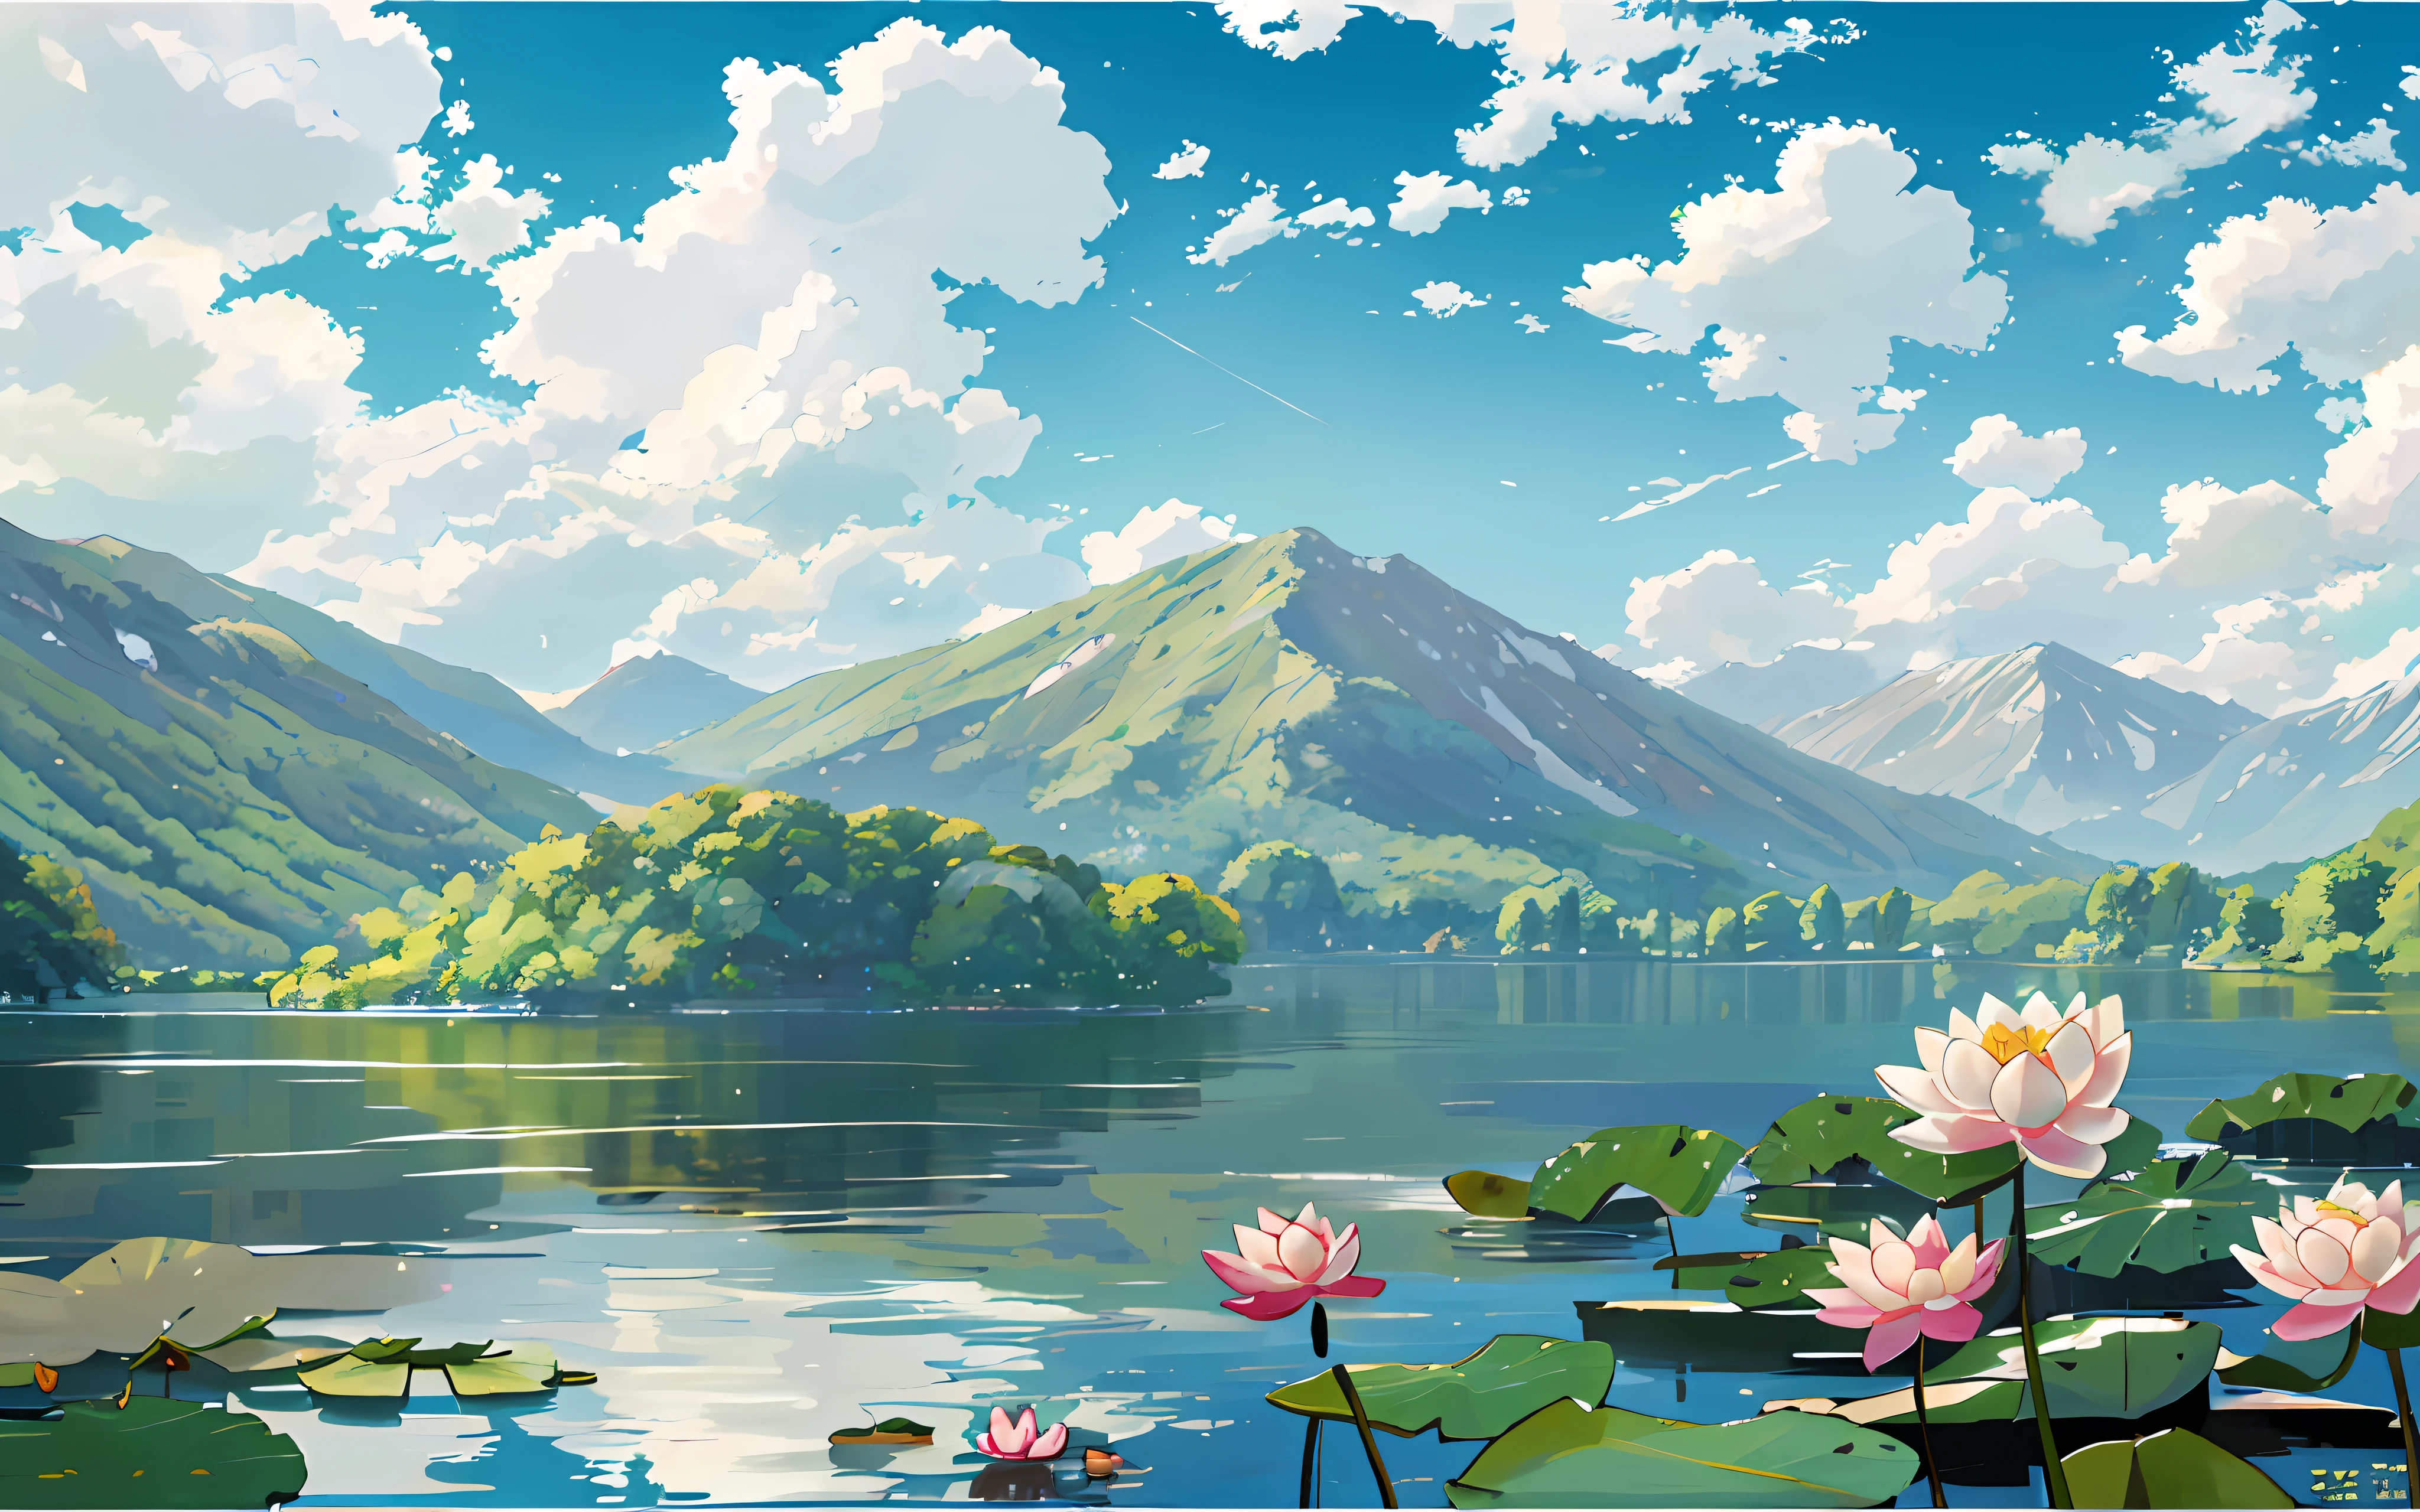 Im Vordergrund ein See, Da ist ein [Weiß] Seerose und Lotusblatt im See, Grüne Berge, blue sky and Weiß clouds, Jeepley-Stil, zweidimensional, Zelluloid, Illustration, natürliche Landschaft, wind, summer, Helle Töne, Sonnenlicht